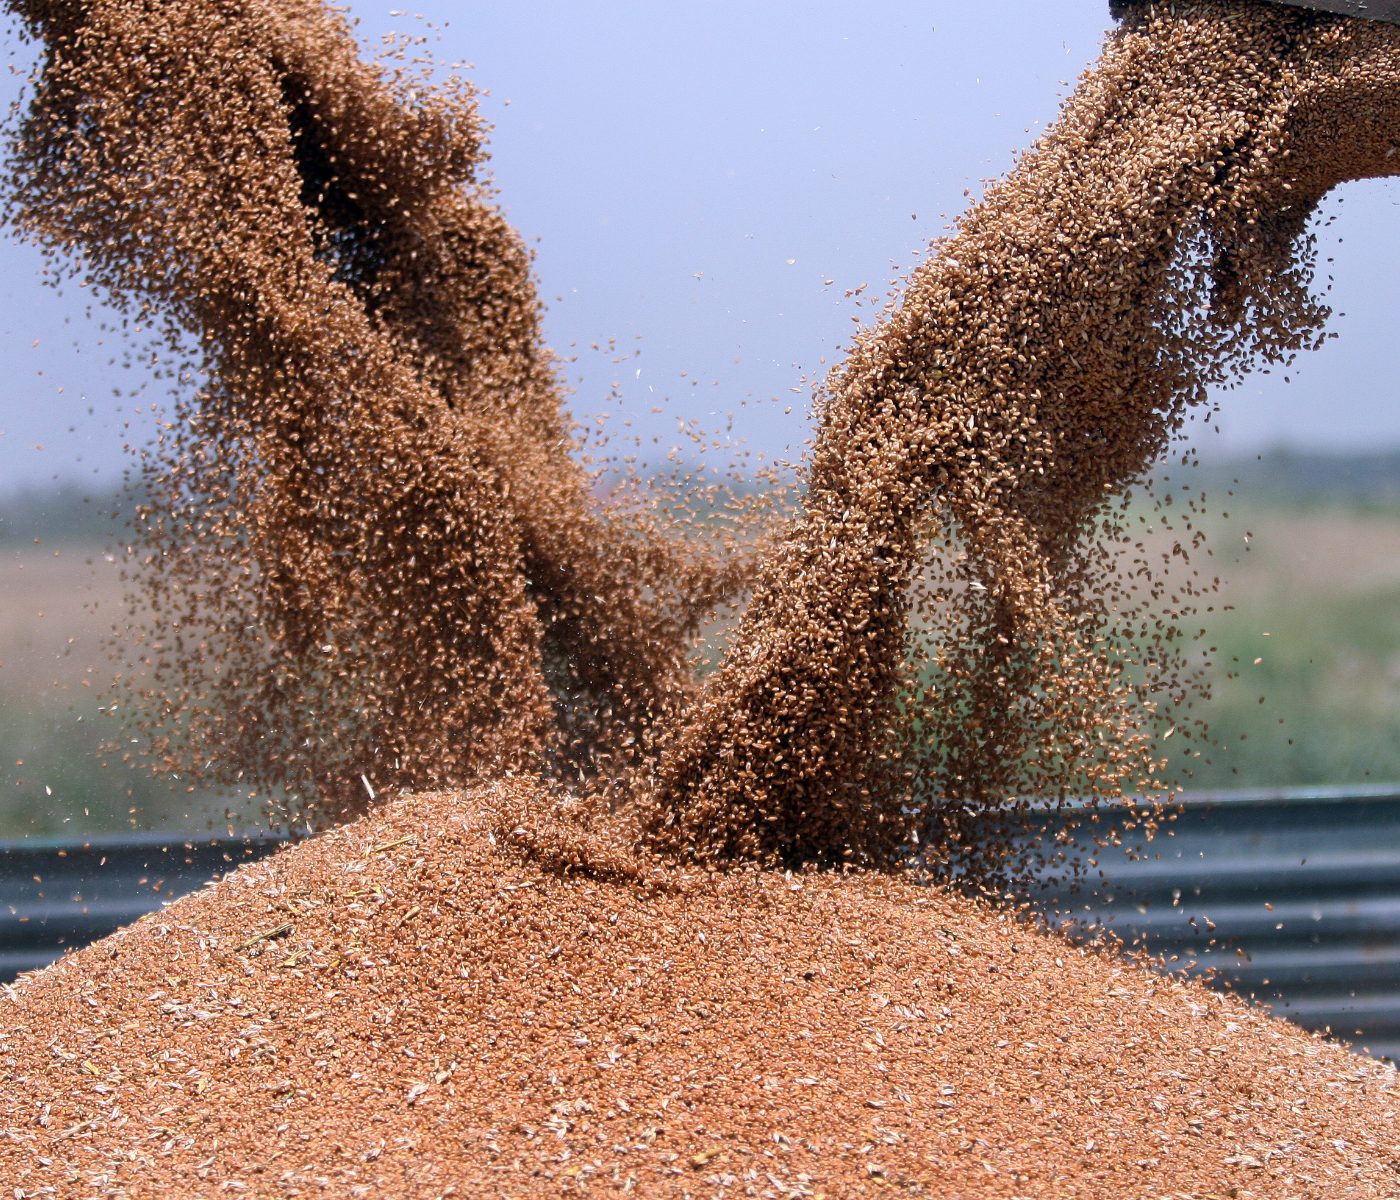 Safra 2021/22 atinge recorde de grãos com 271,2 milhões de toneladas produzidas